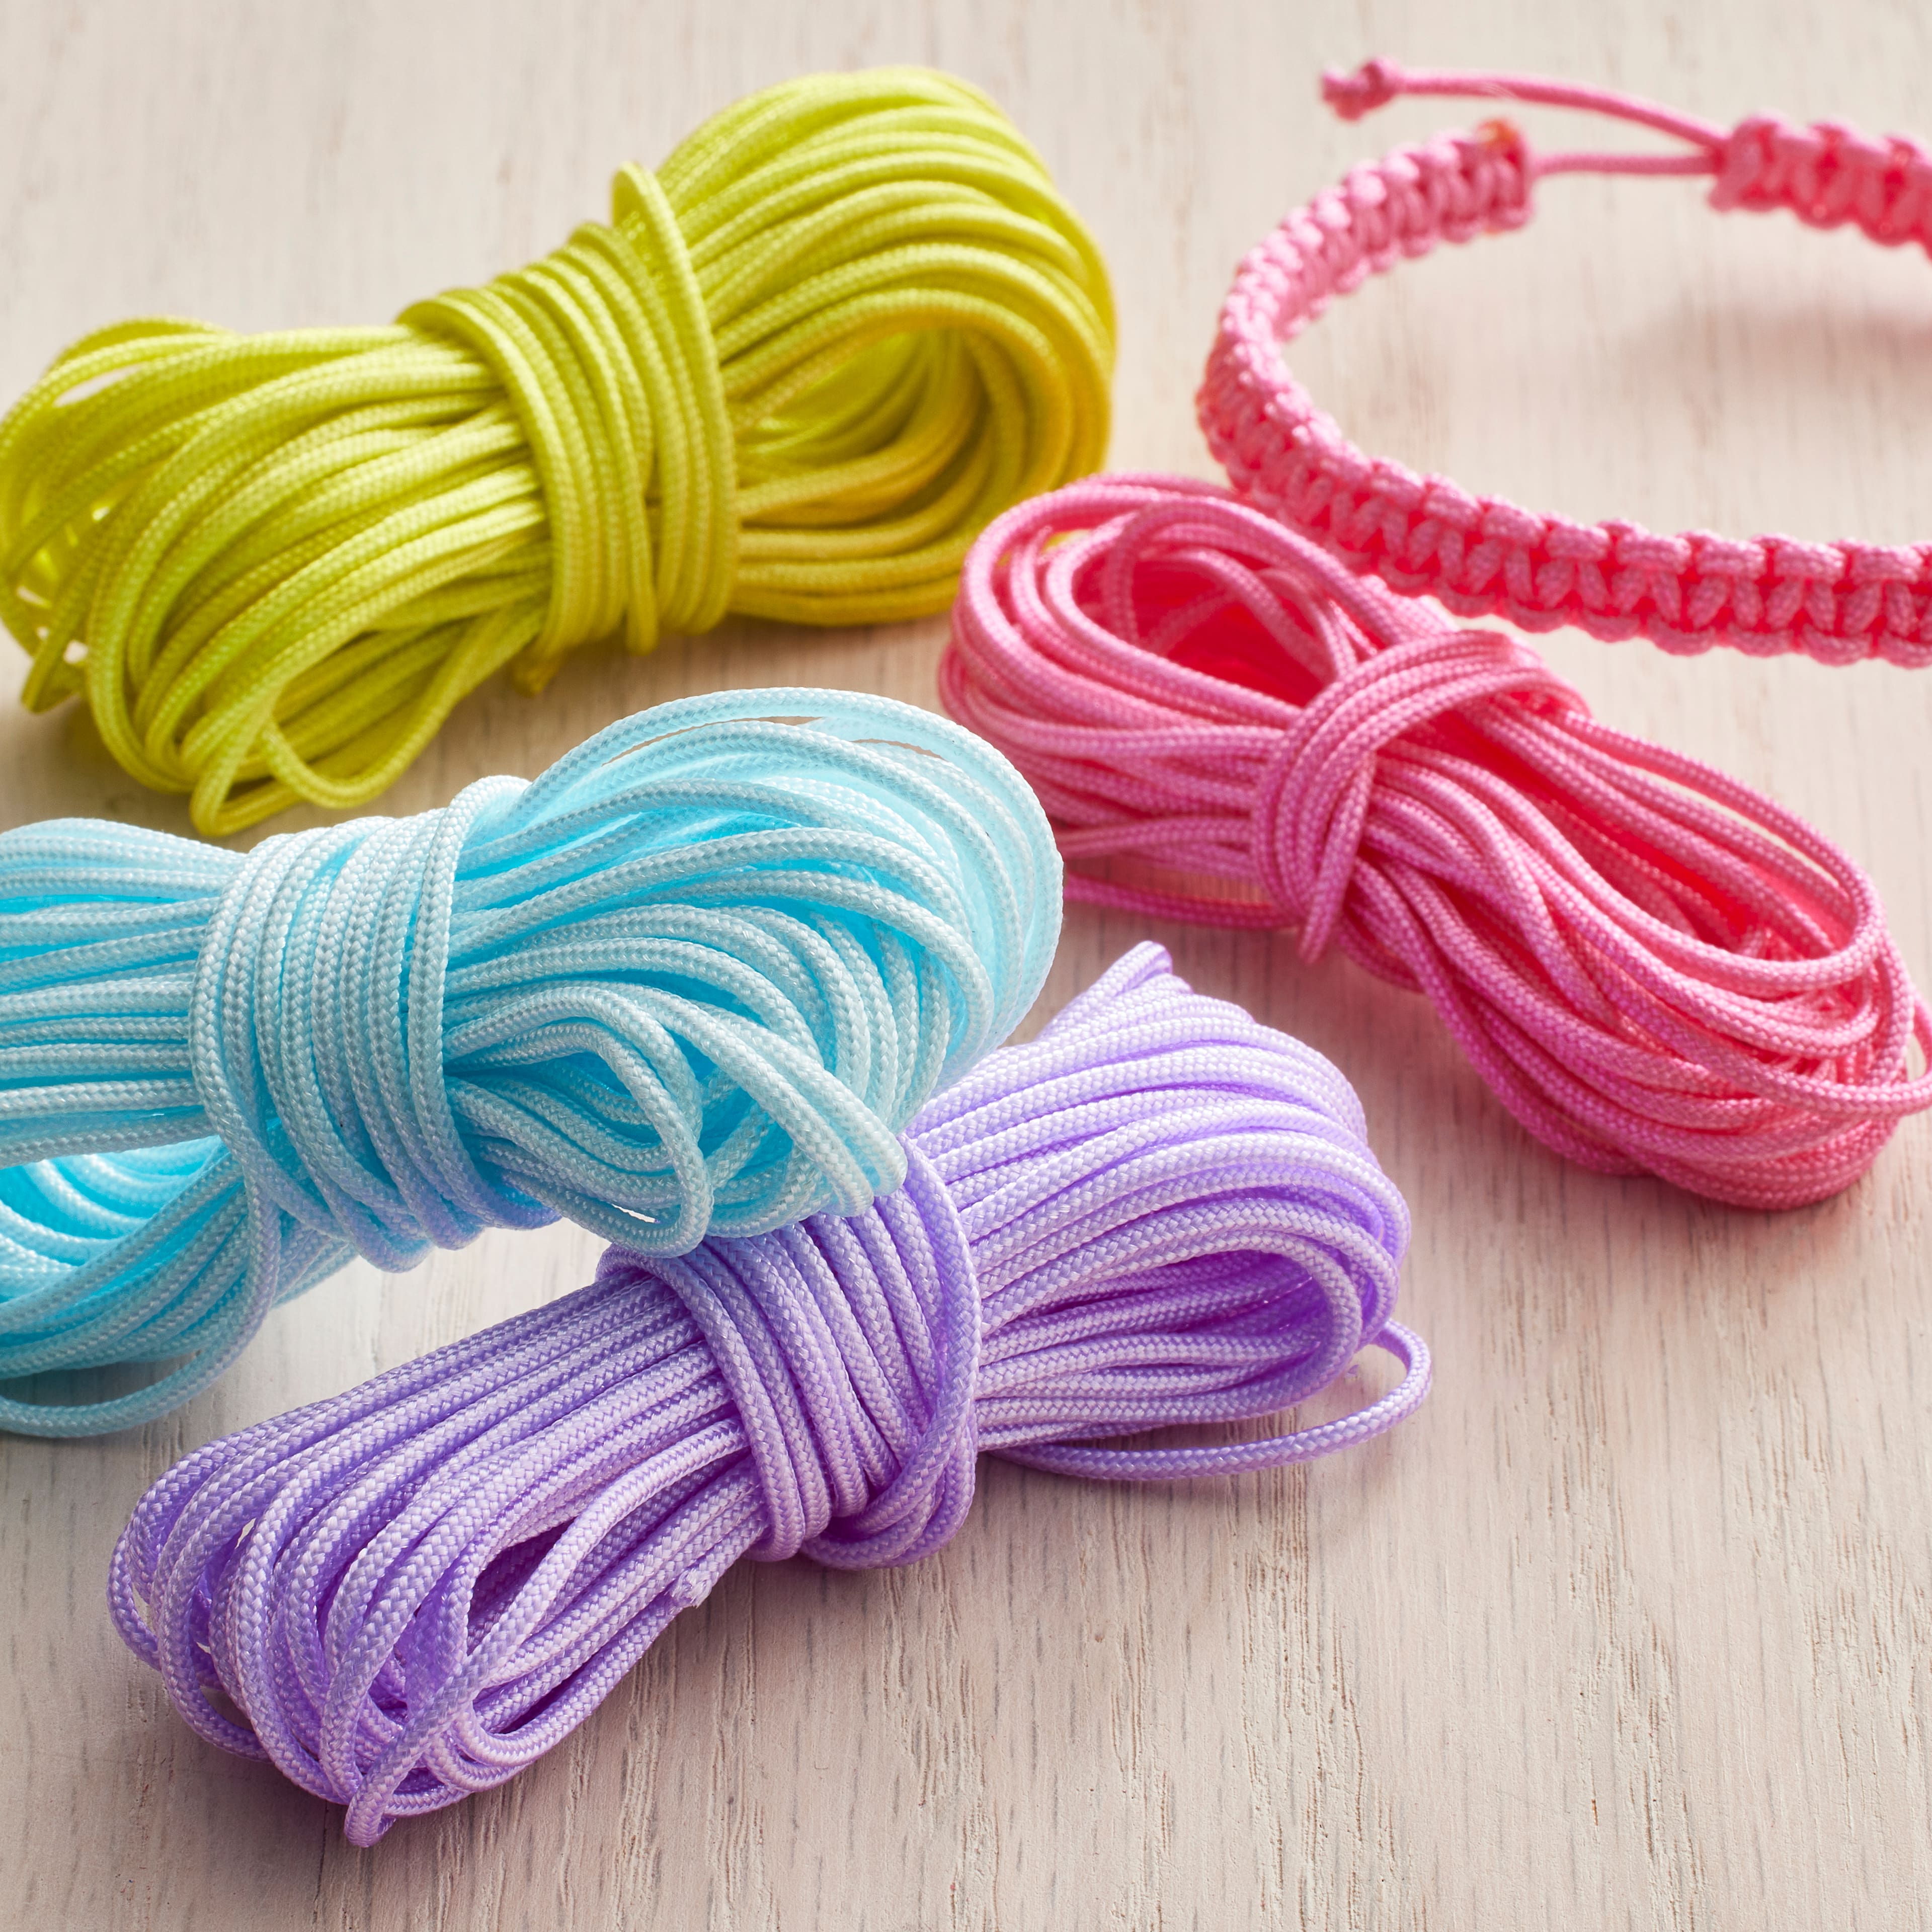  Nylon String for Bracelets, 10 Colors Rolls Nylon Cord